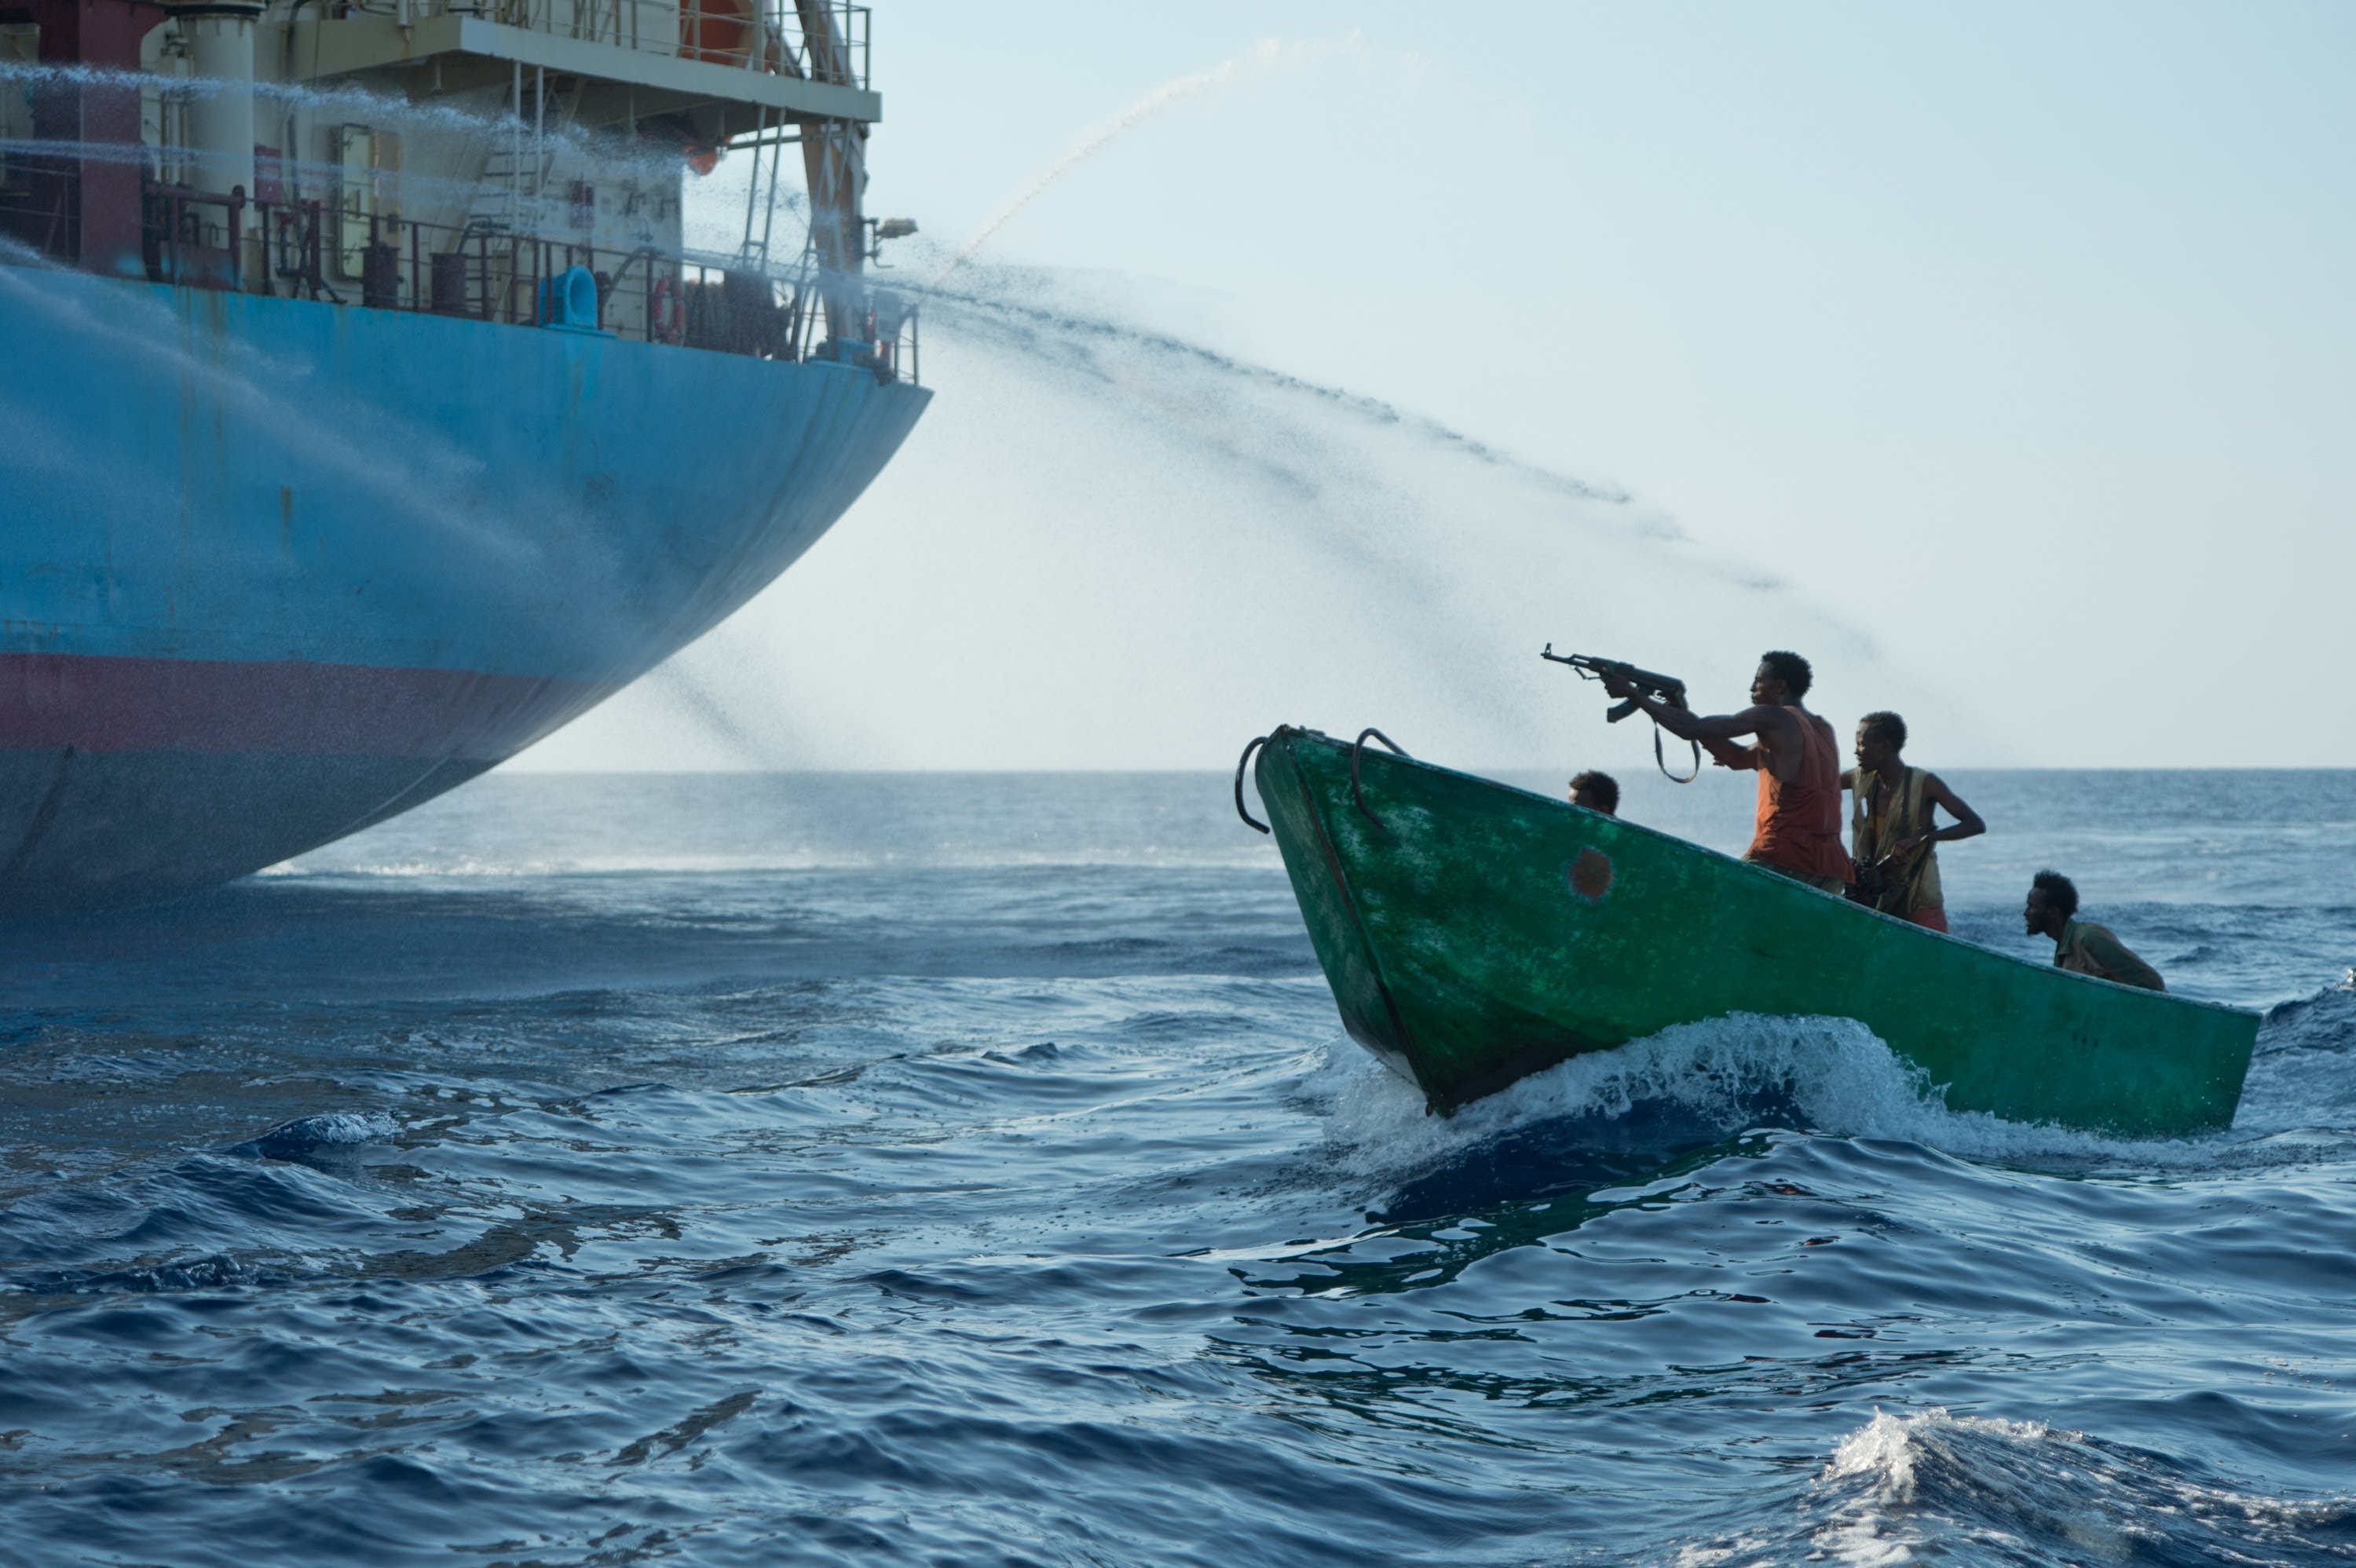 Нападение на судно. Сомалийские пираты Капитан Филлипс. Аденский залив пираты. Пираты Сомали захватили кораблю.